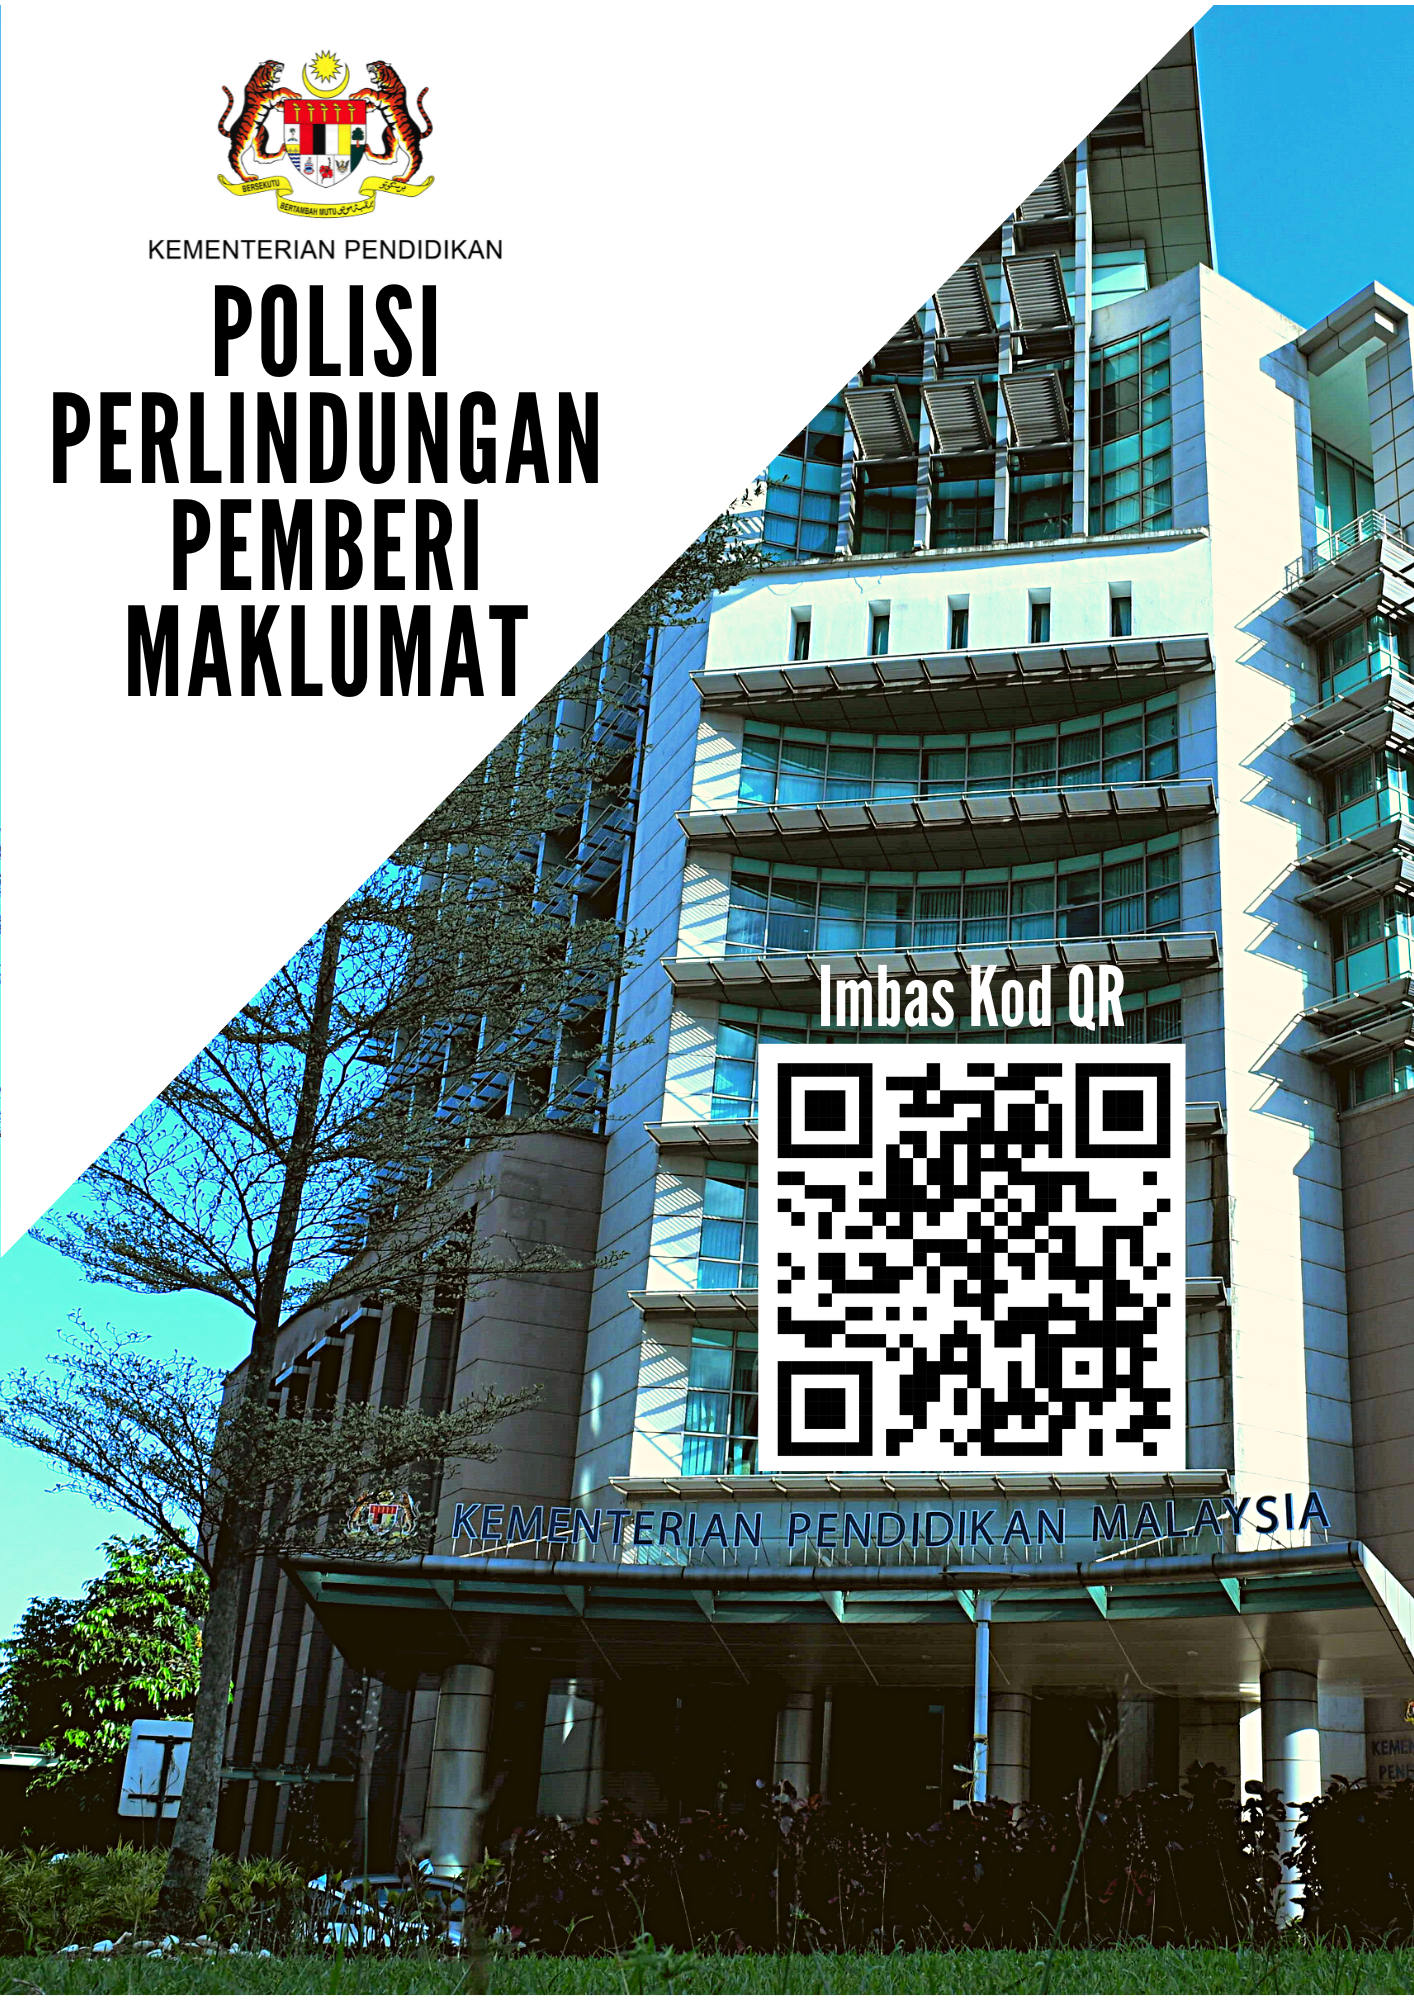 Polisi Perlindungan Pemberi Maklumat Kementerian Pendidikan Malaysia KPM 26 Jan 2023